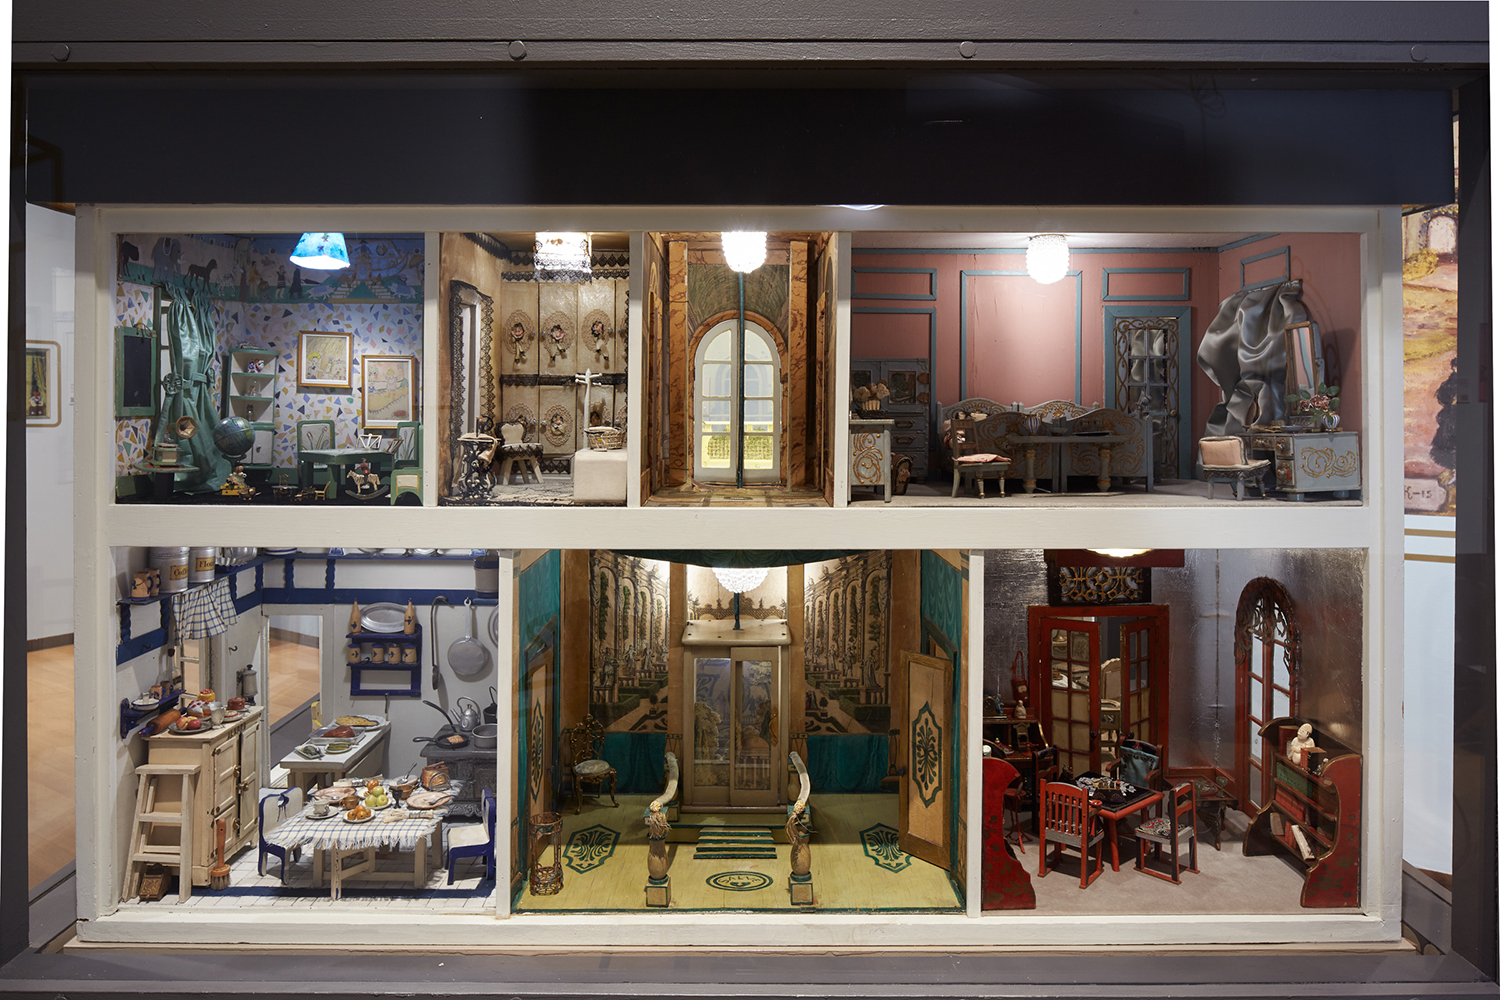 纽约市博物馆 Stettheimer Dollhouse 展览的图片